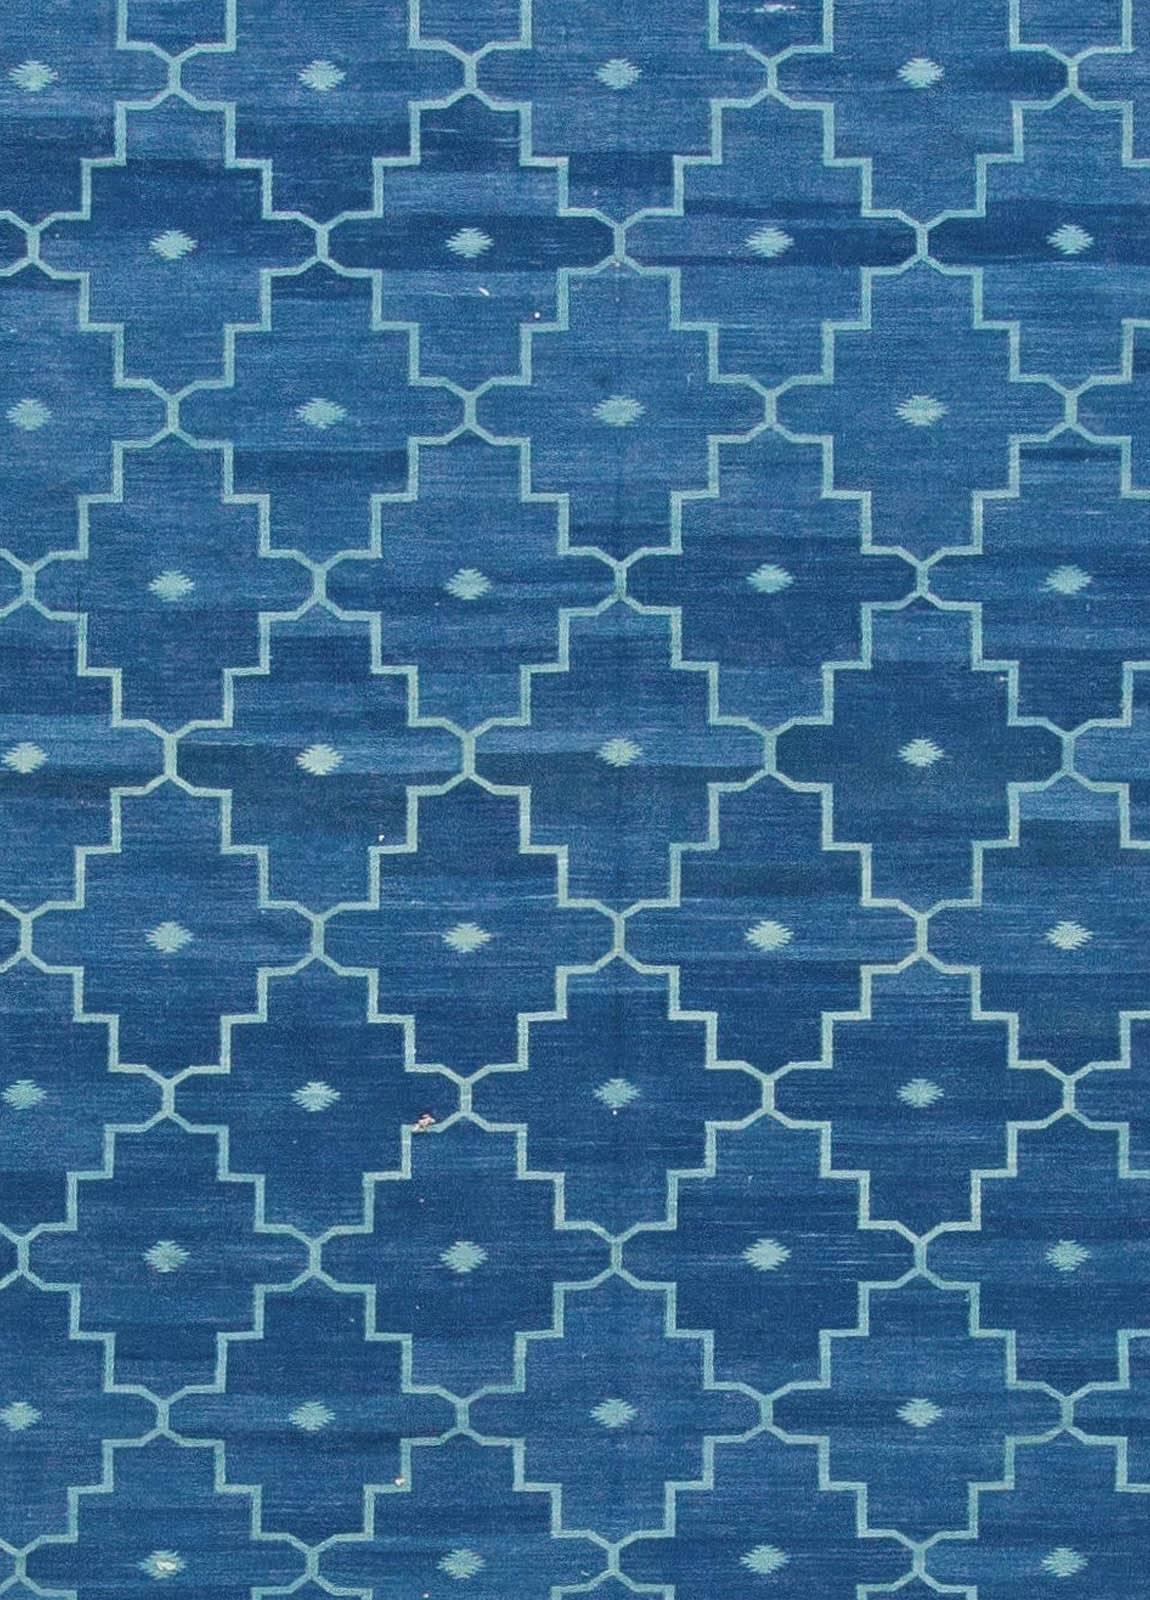 Zeitgenössischer indischer Flachgewebe-Teppich Dhurrie blau von Doris Leslie Blau.
Größe: 13'10